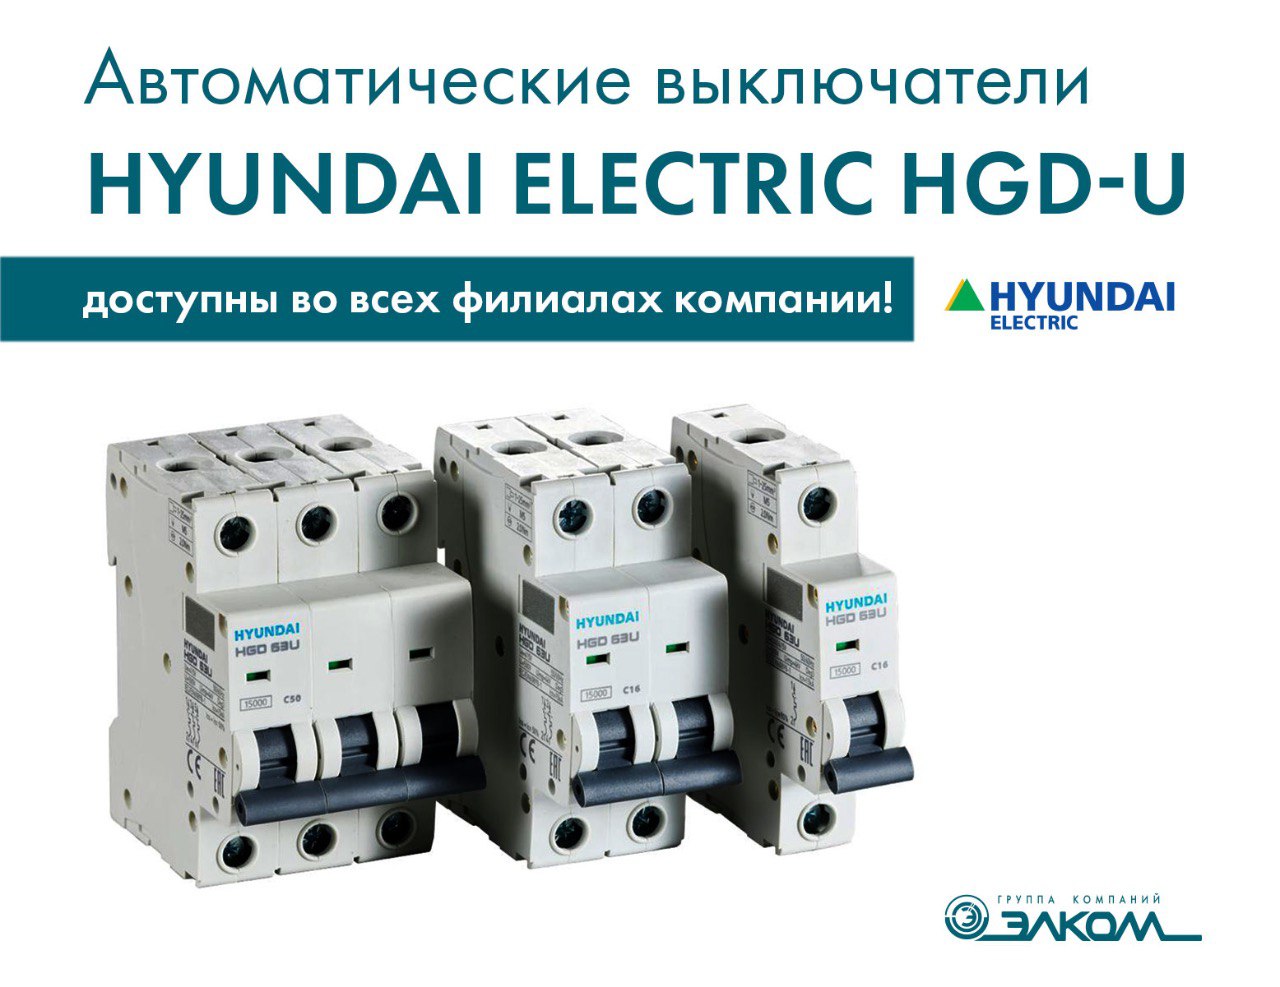 Автоматические выключатели Hyundai Electric HGD-U доступны во всех филиалах компании